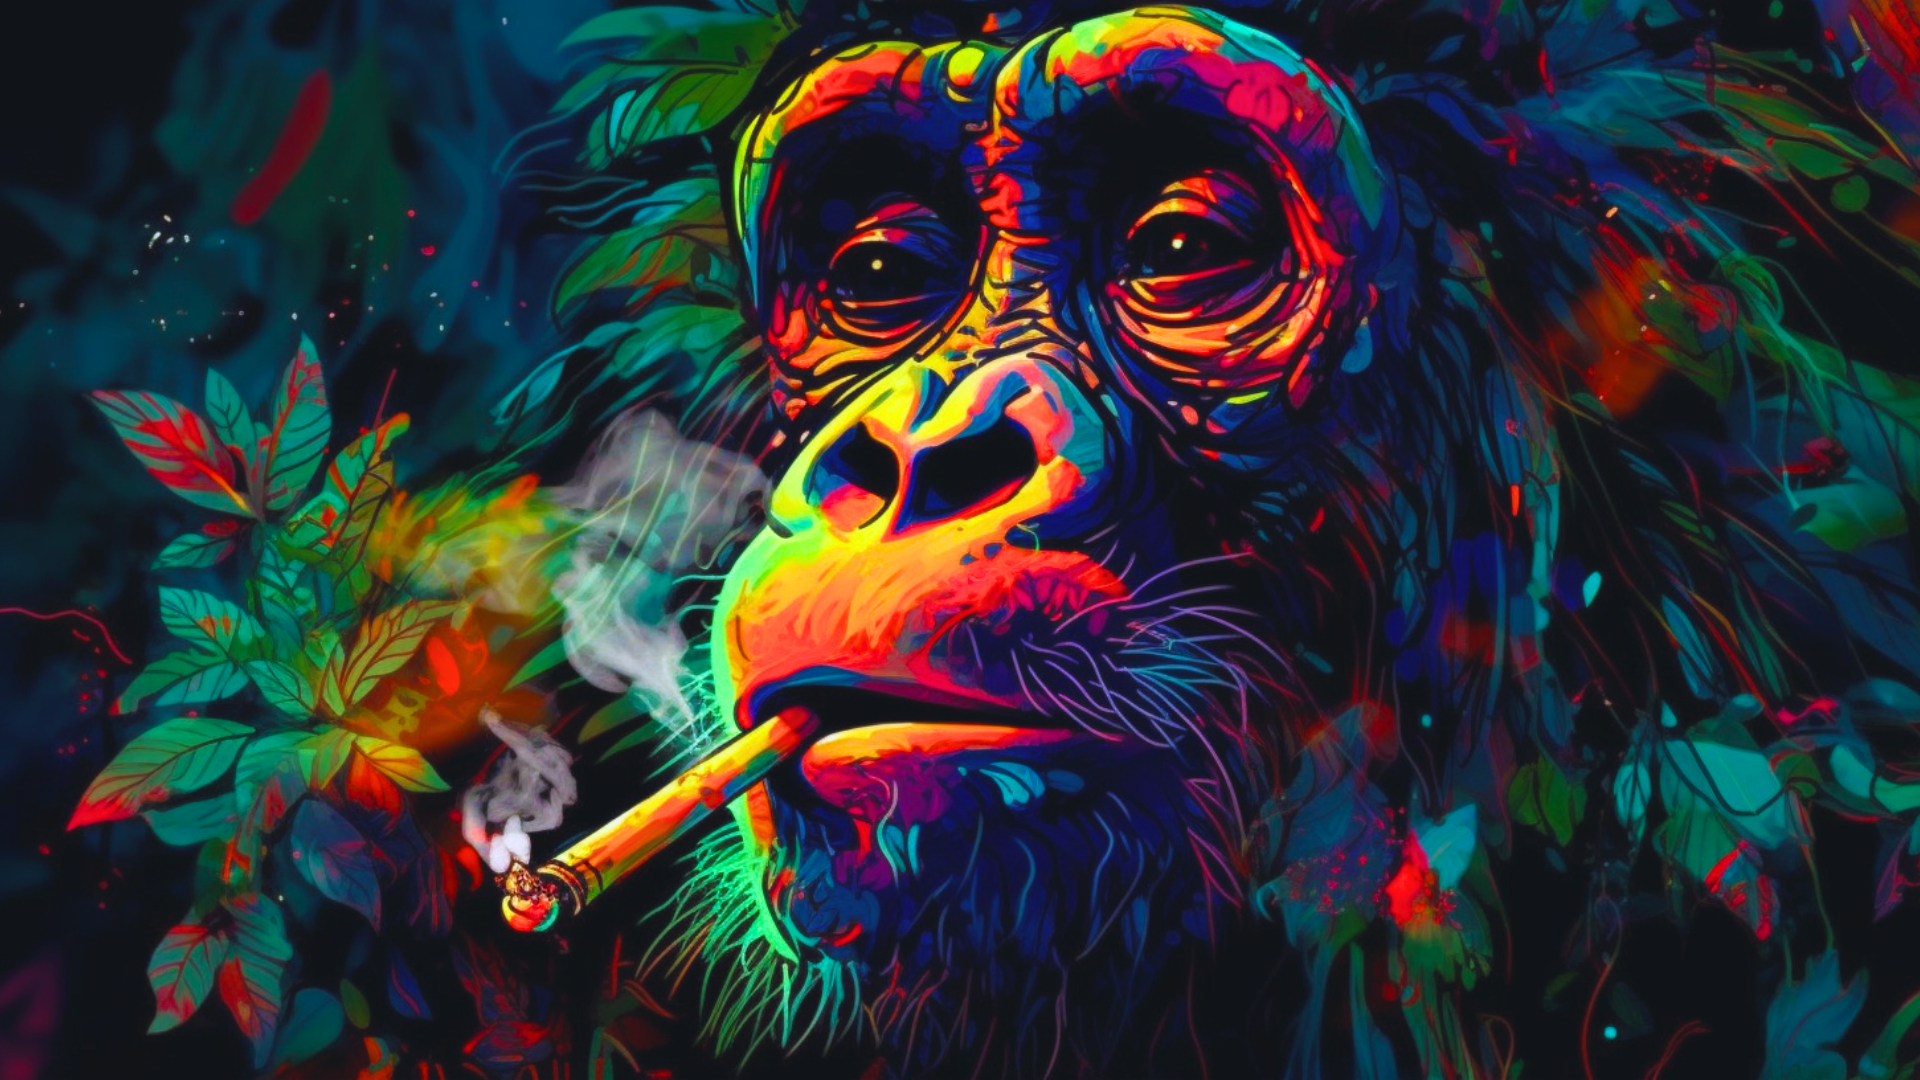 cover image for grease monkey strain with animated monkey smoking marijuana